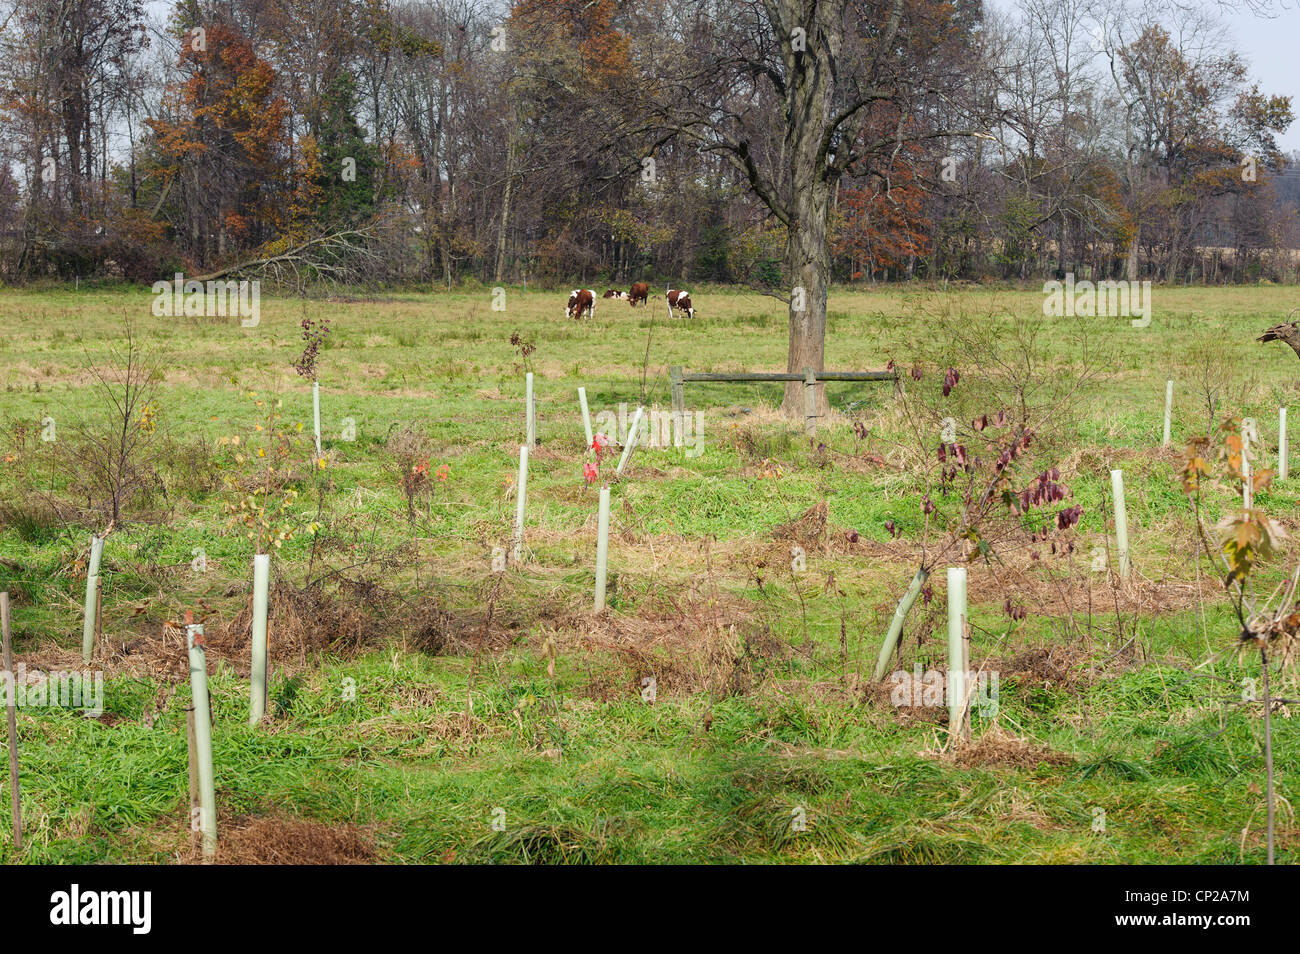 Riserva di conservazione Programma di miglioramento (CREP)piantato alberi IN TUBI DI PROTEZIONE PER FLUSSO DI MIGLIORAMENTO DELLA BANCA Foto Stock